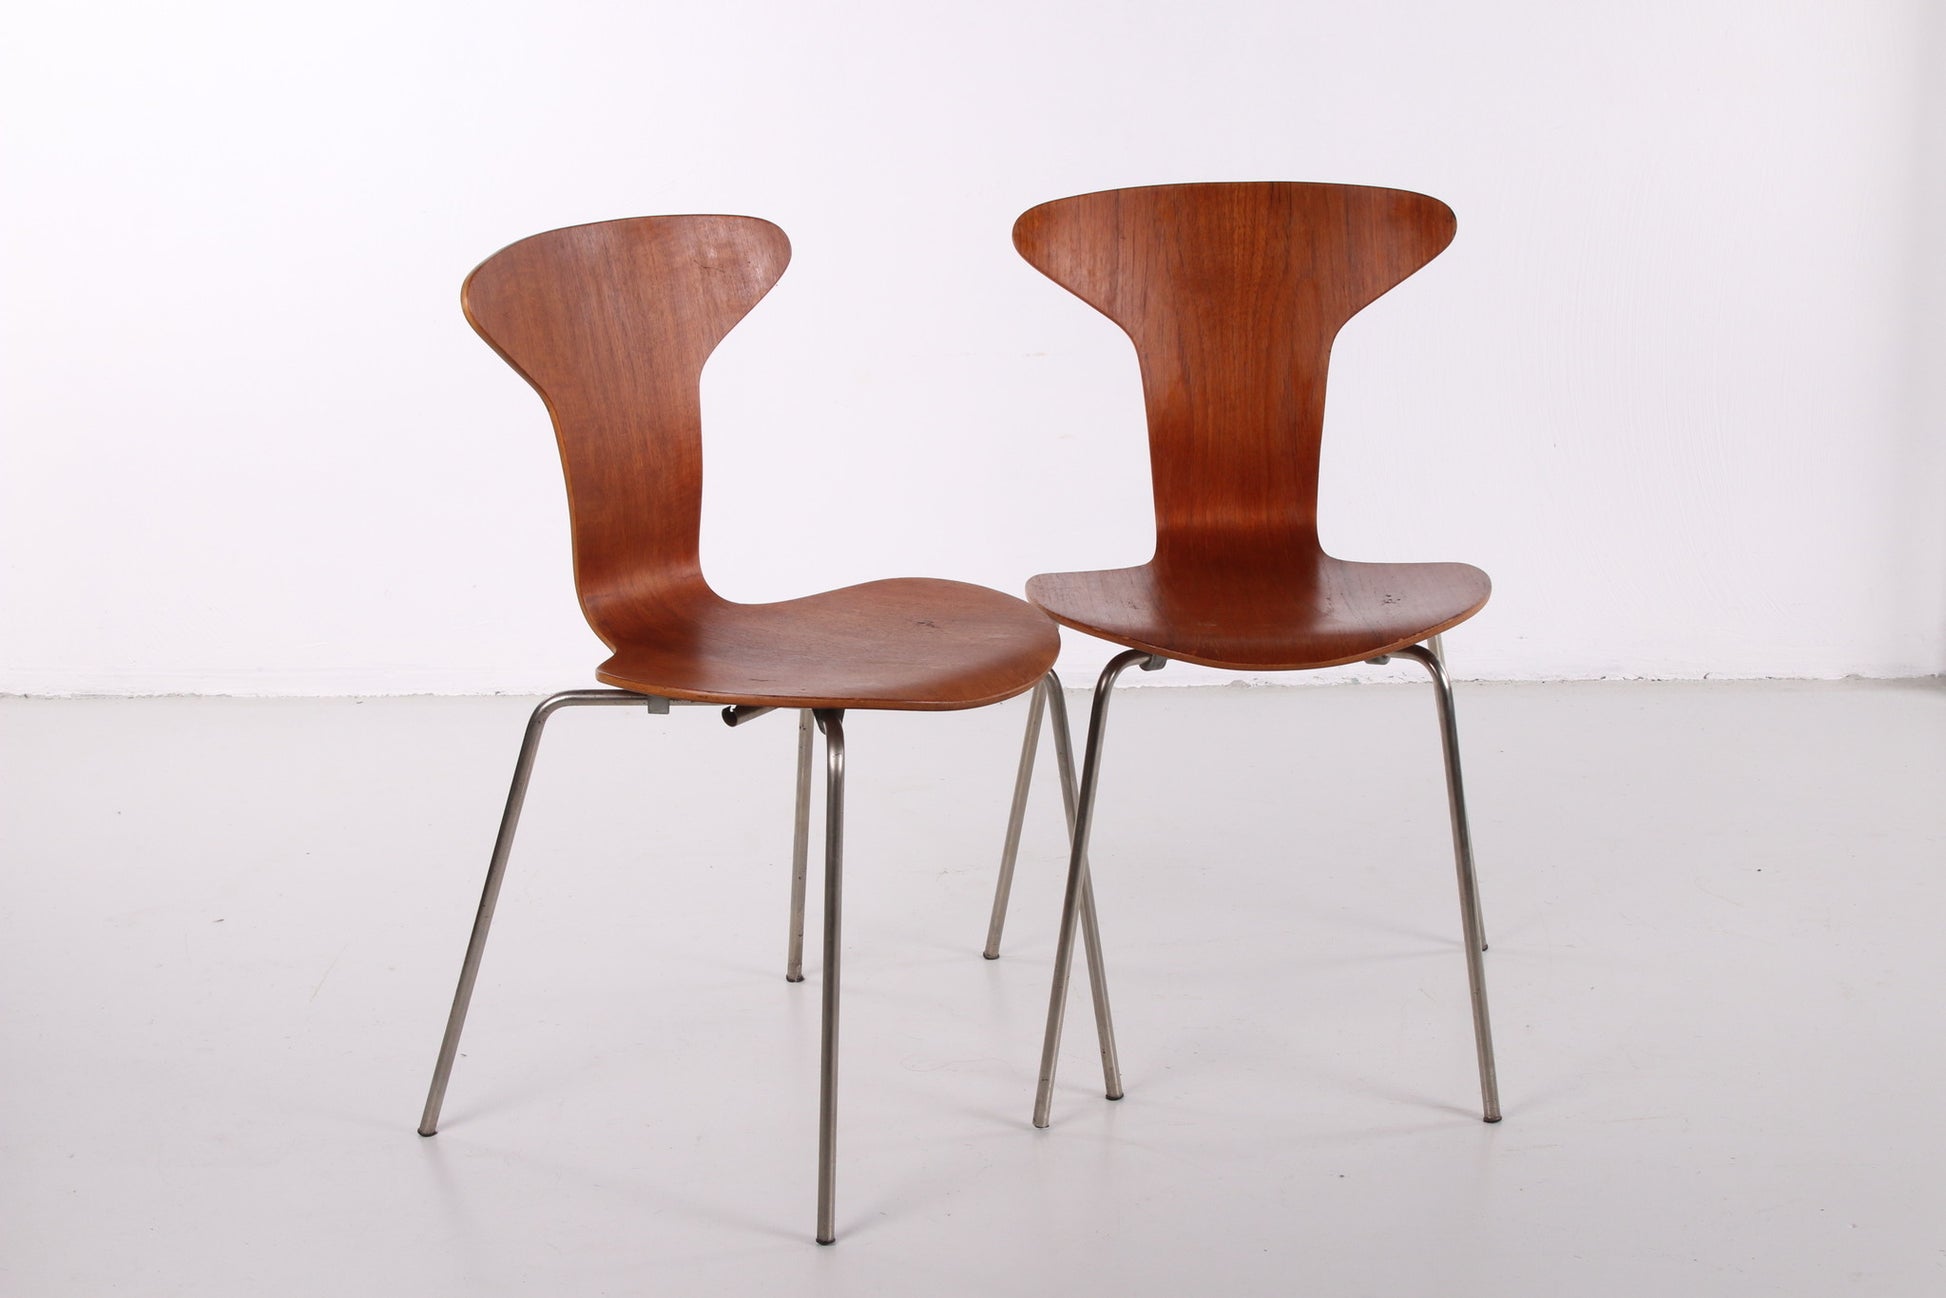 Vintage Arne Jacobsen Mosquito 3105 stoel set van 2 gemaakt door Fritz Hansen 1950s voor en zijkant